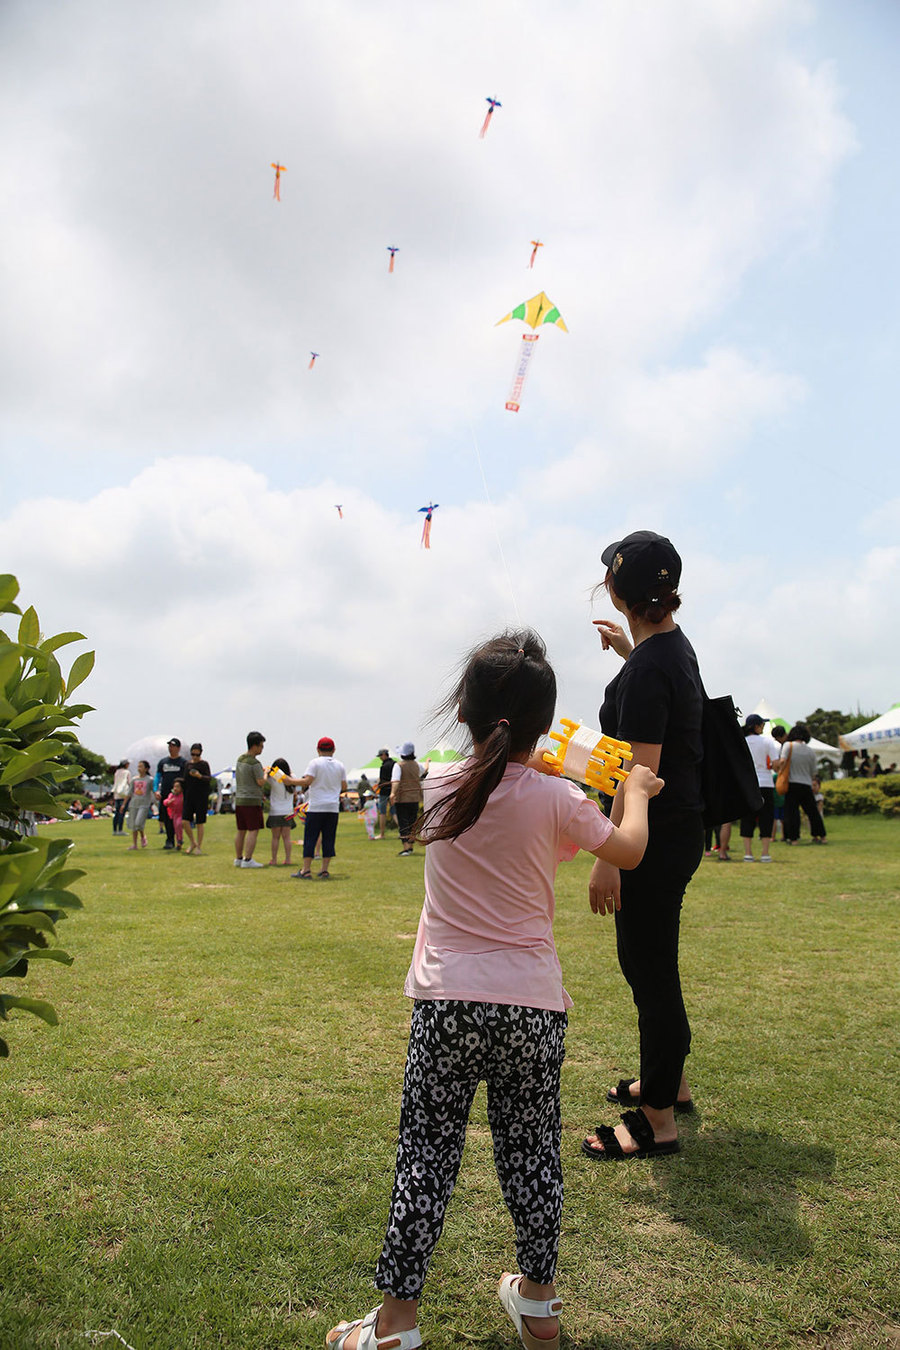 어린여자아이와 엄마가 연을 날리며 하늘을 바라보고 있는 모습